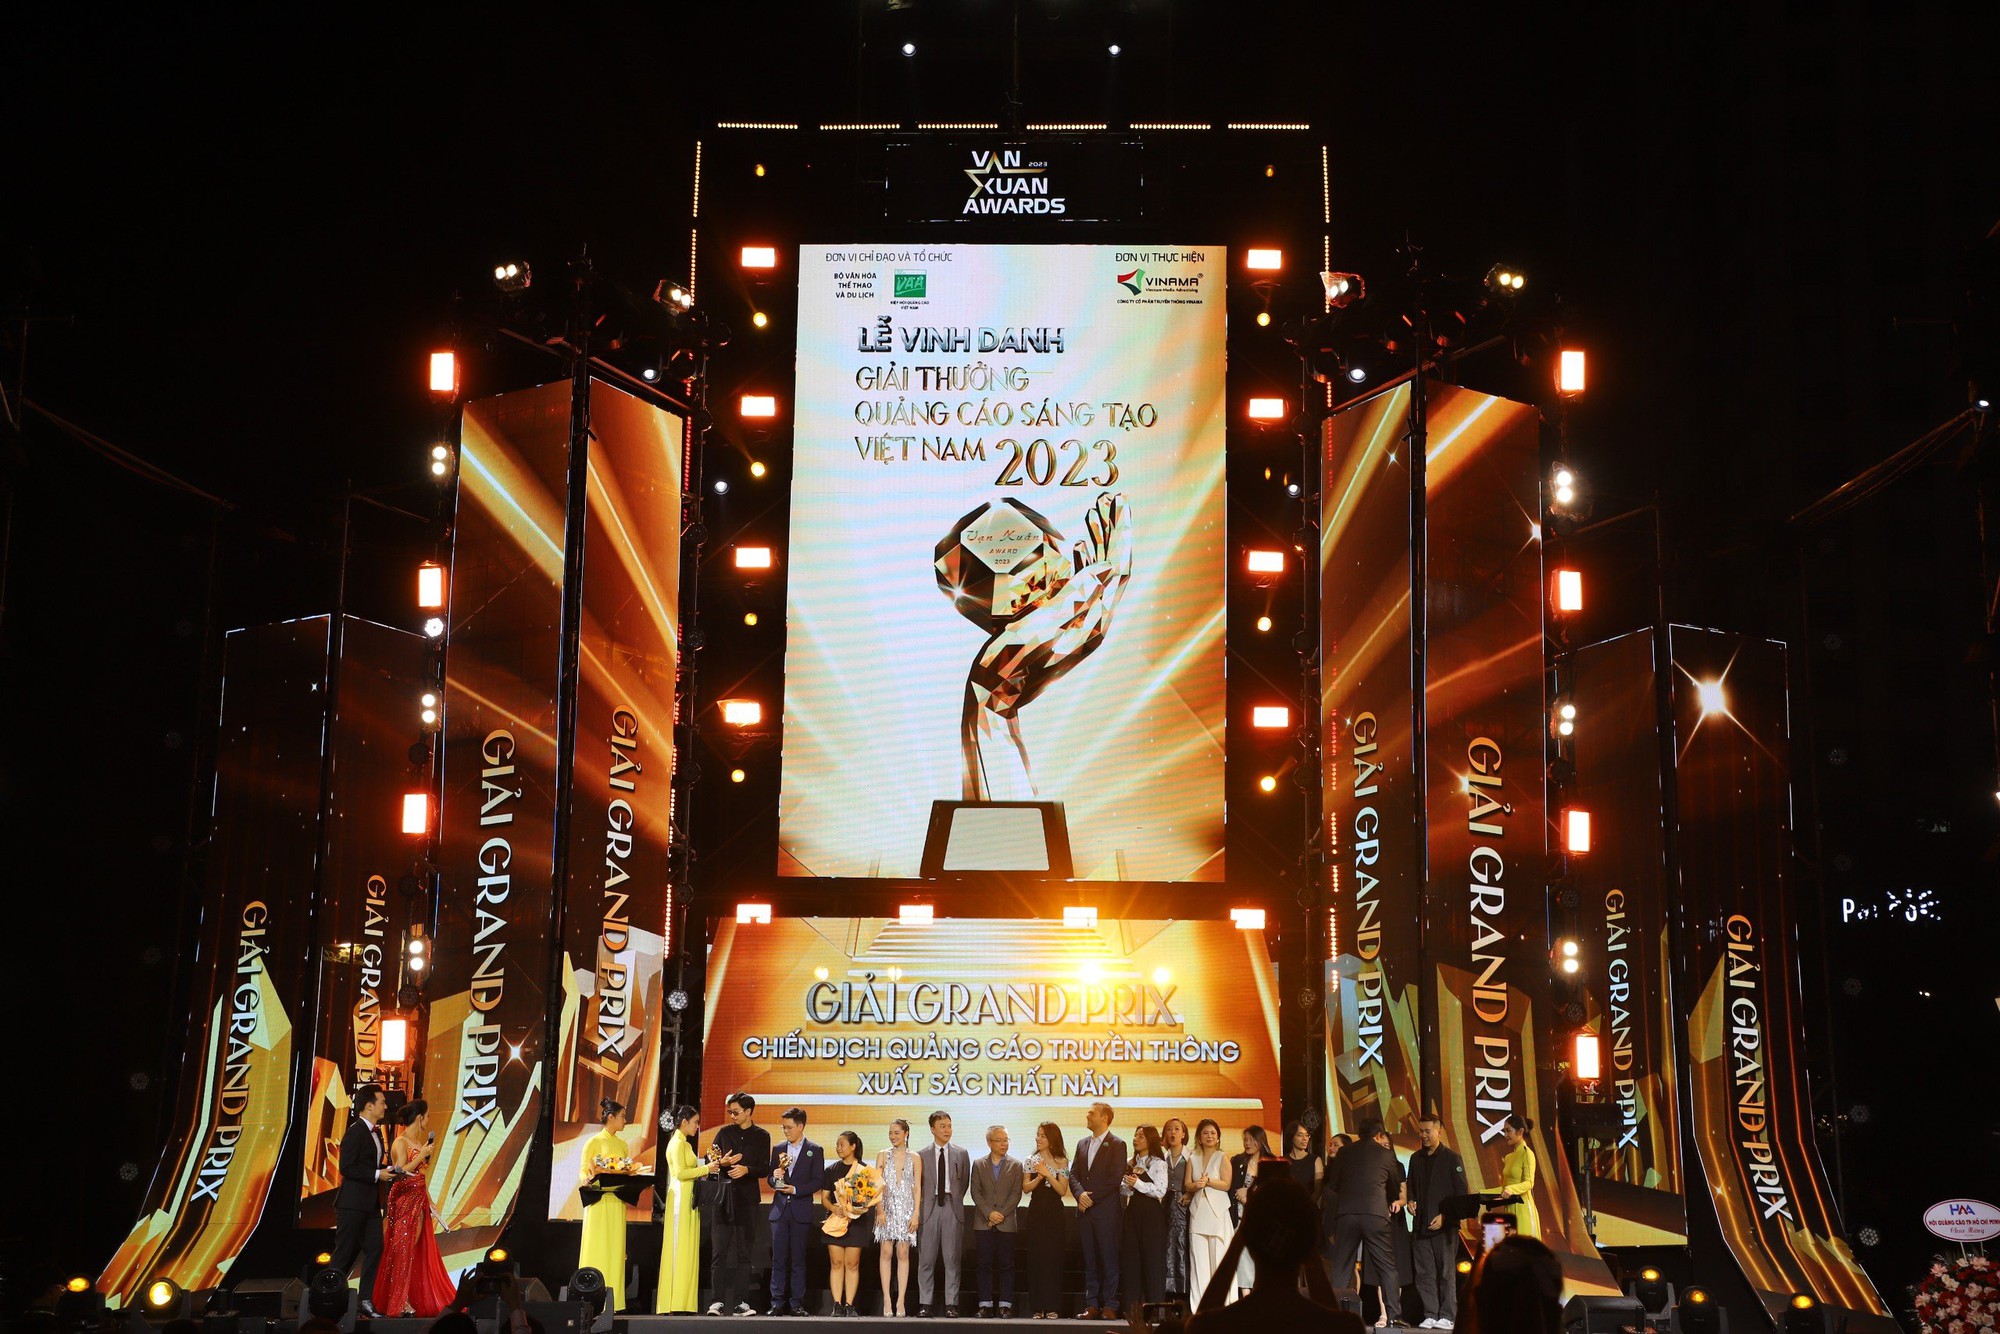 Giải Grand Prix vinh danh thương hiệu có chiến dịch Quảng cáo truyền thông xuất sắc nhất năm thuộc về Nestle's và Vietinbank